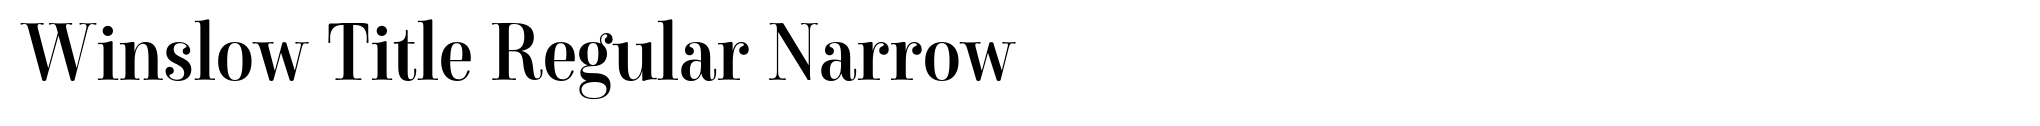 Winslow Title Regular Narrow image